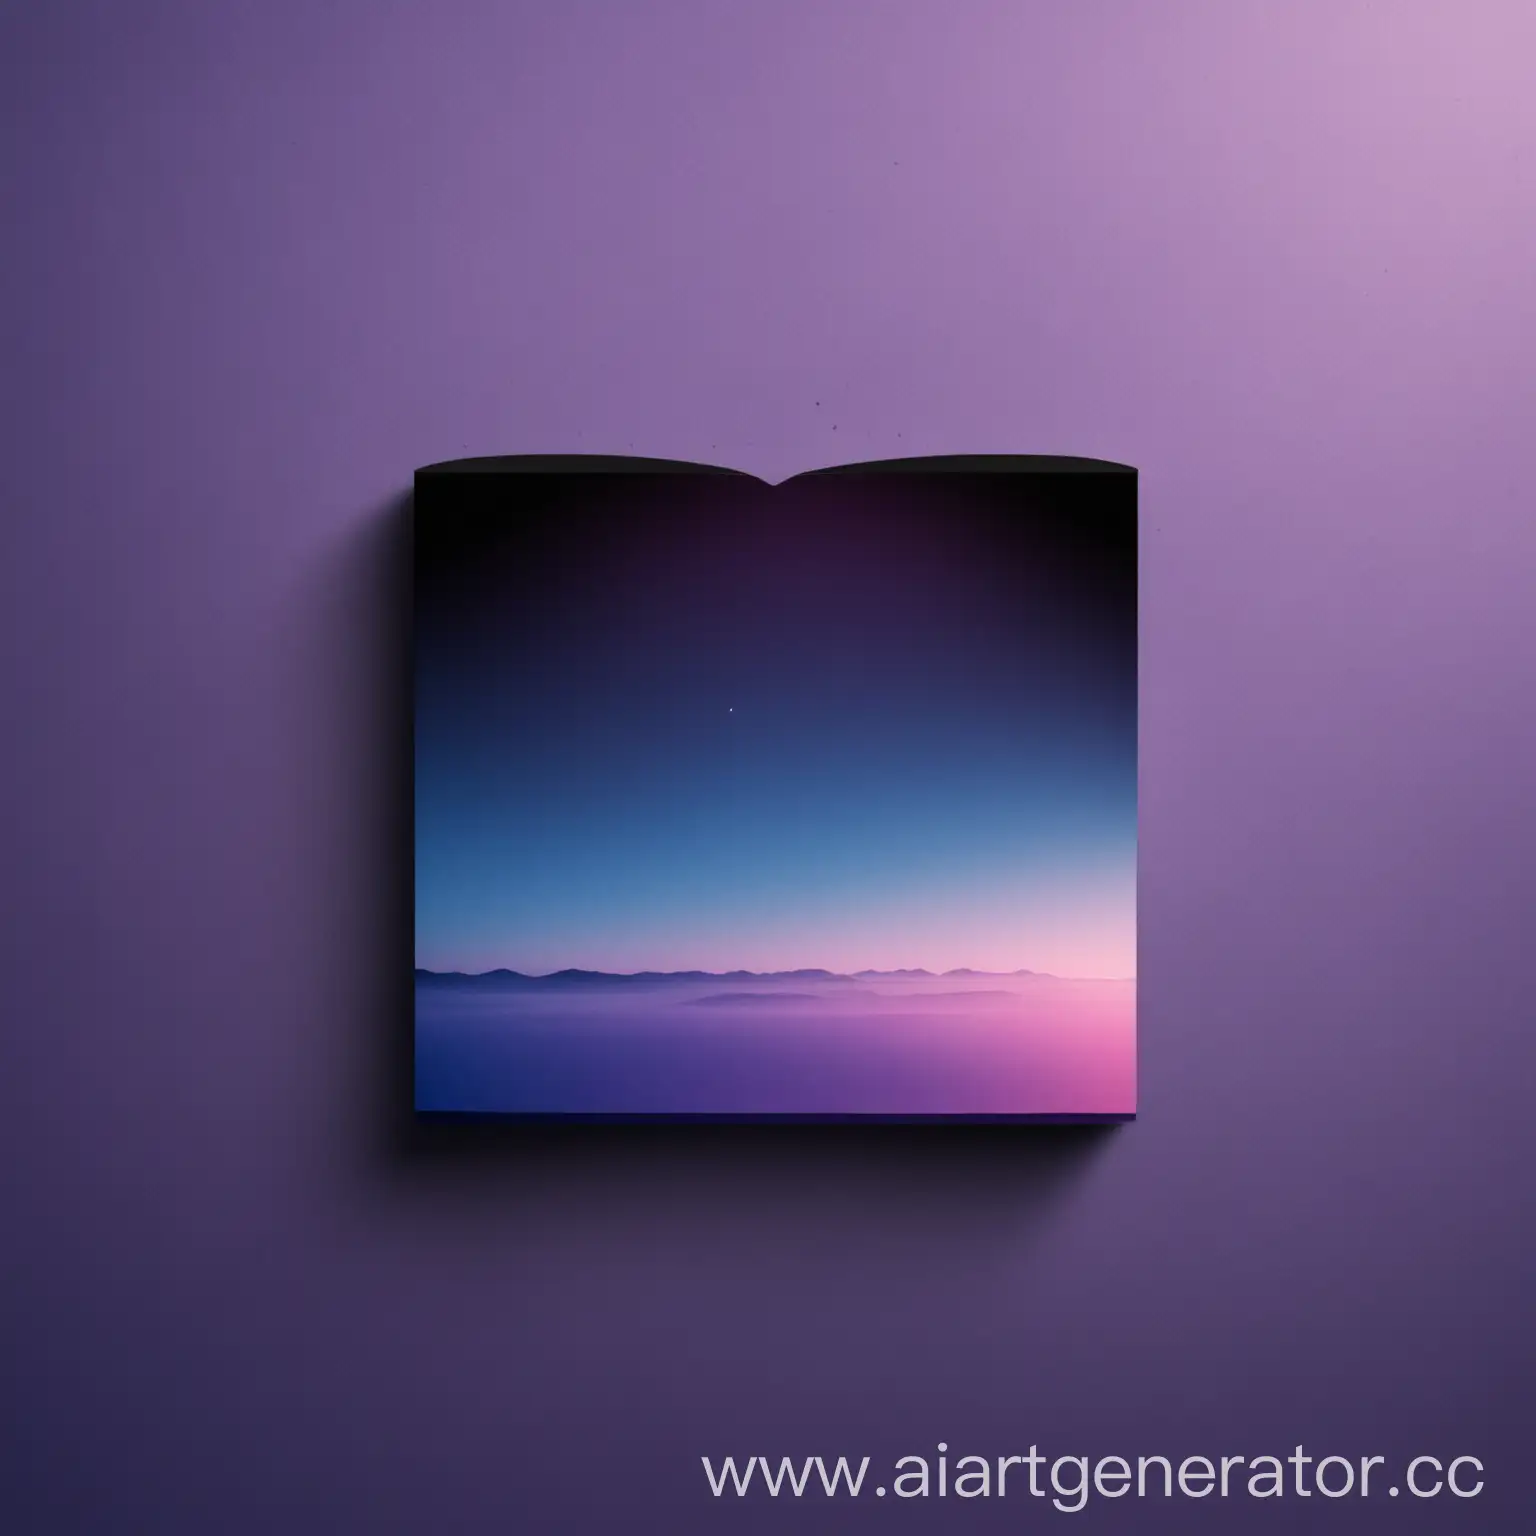 сделай две одинаковых фото в минималистичном стиле для обоев на компьютер с тонами чёрного синего фиолетового